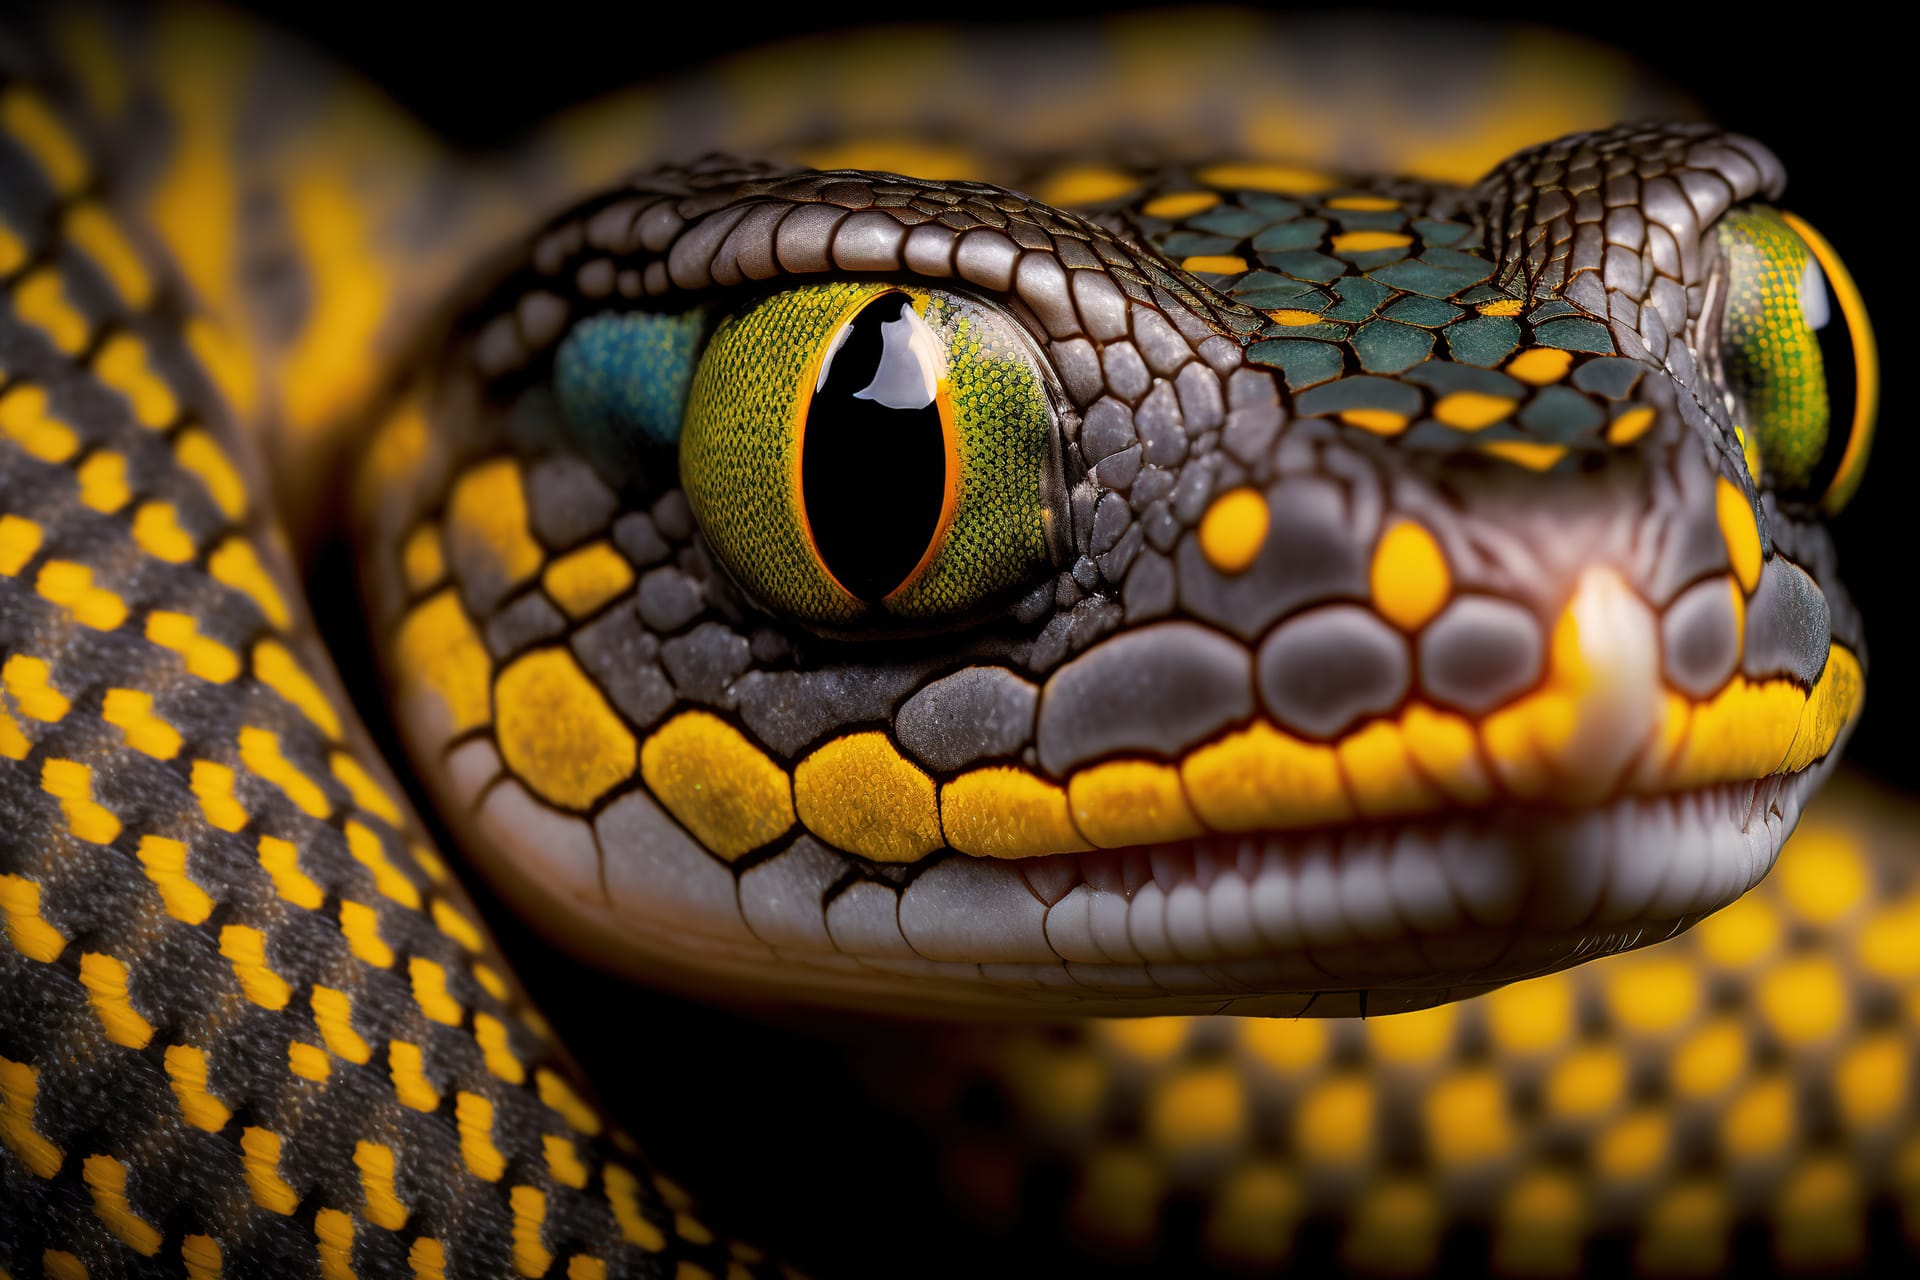 Portrait poisonous snake black background closeup shot image